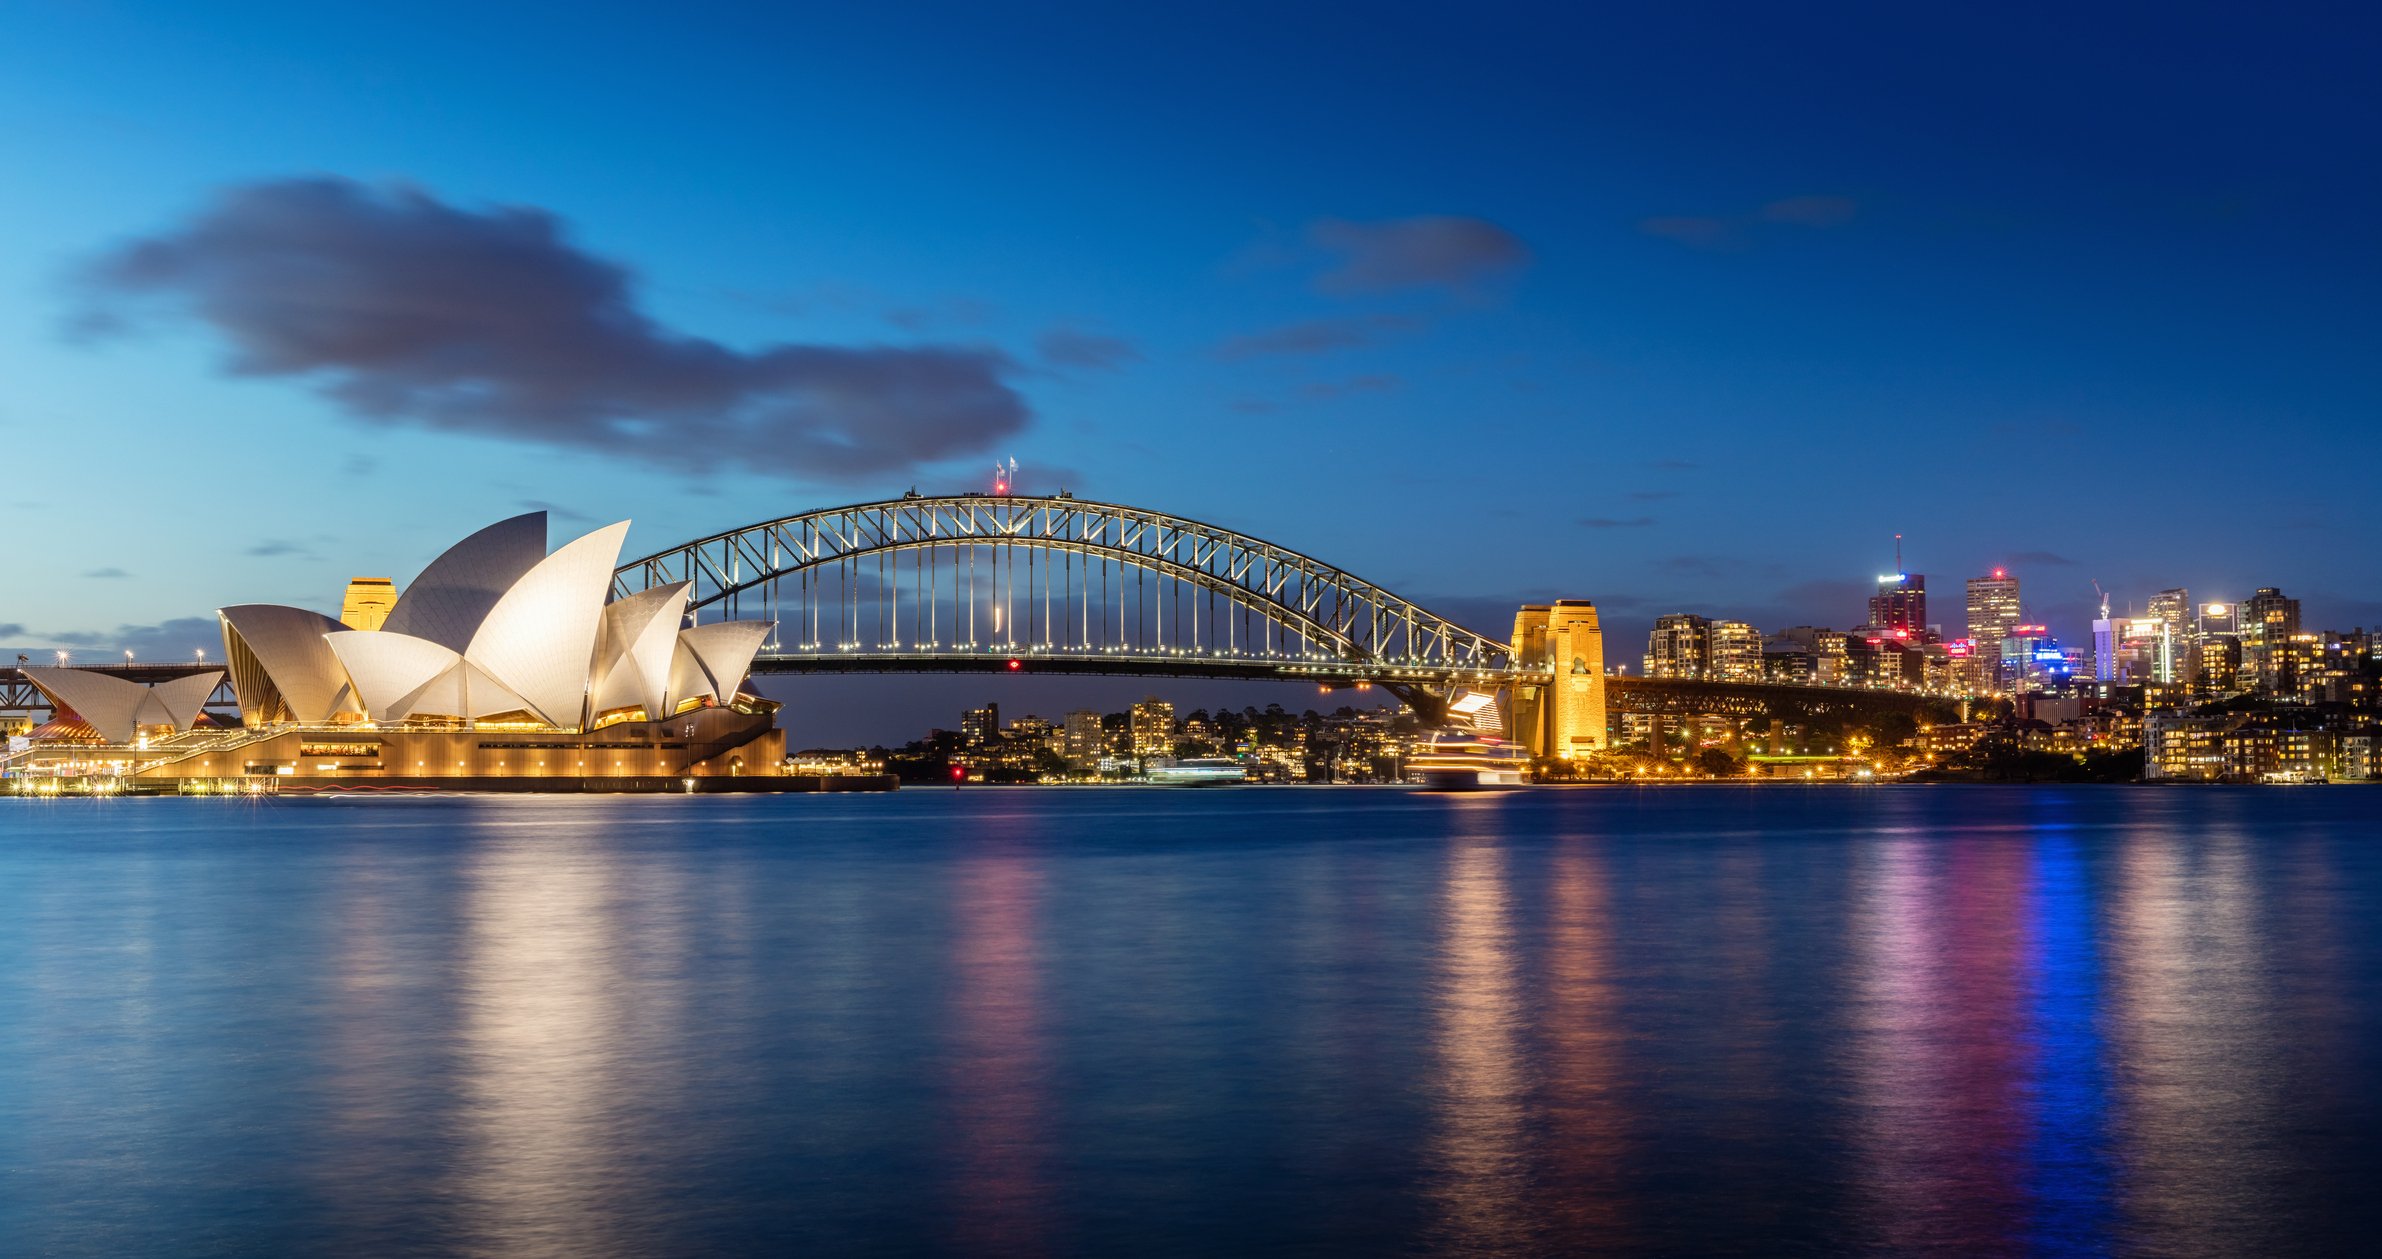 Sídney de noche, Australia, con Opera House y Harbour Bridge